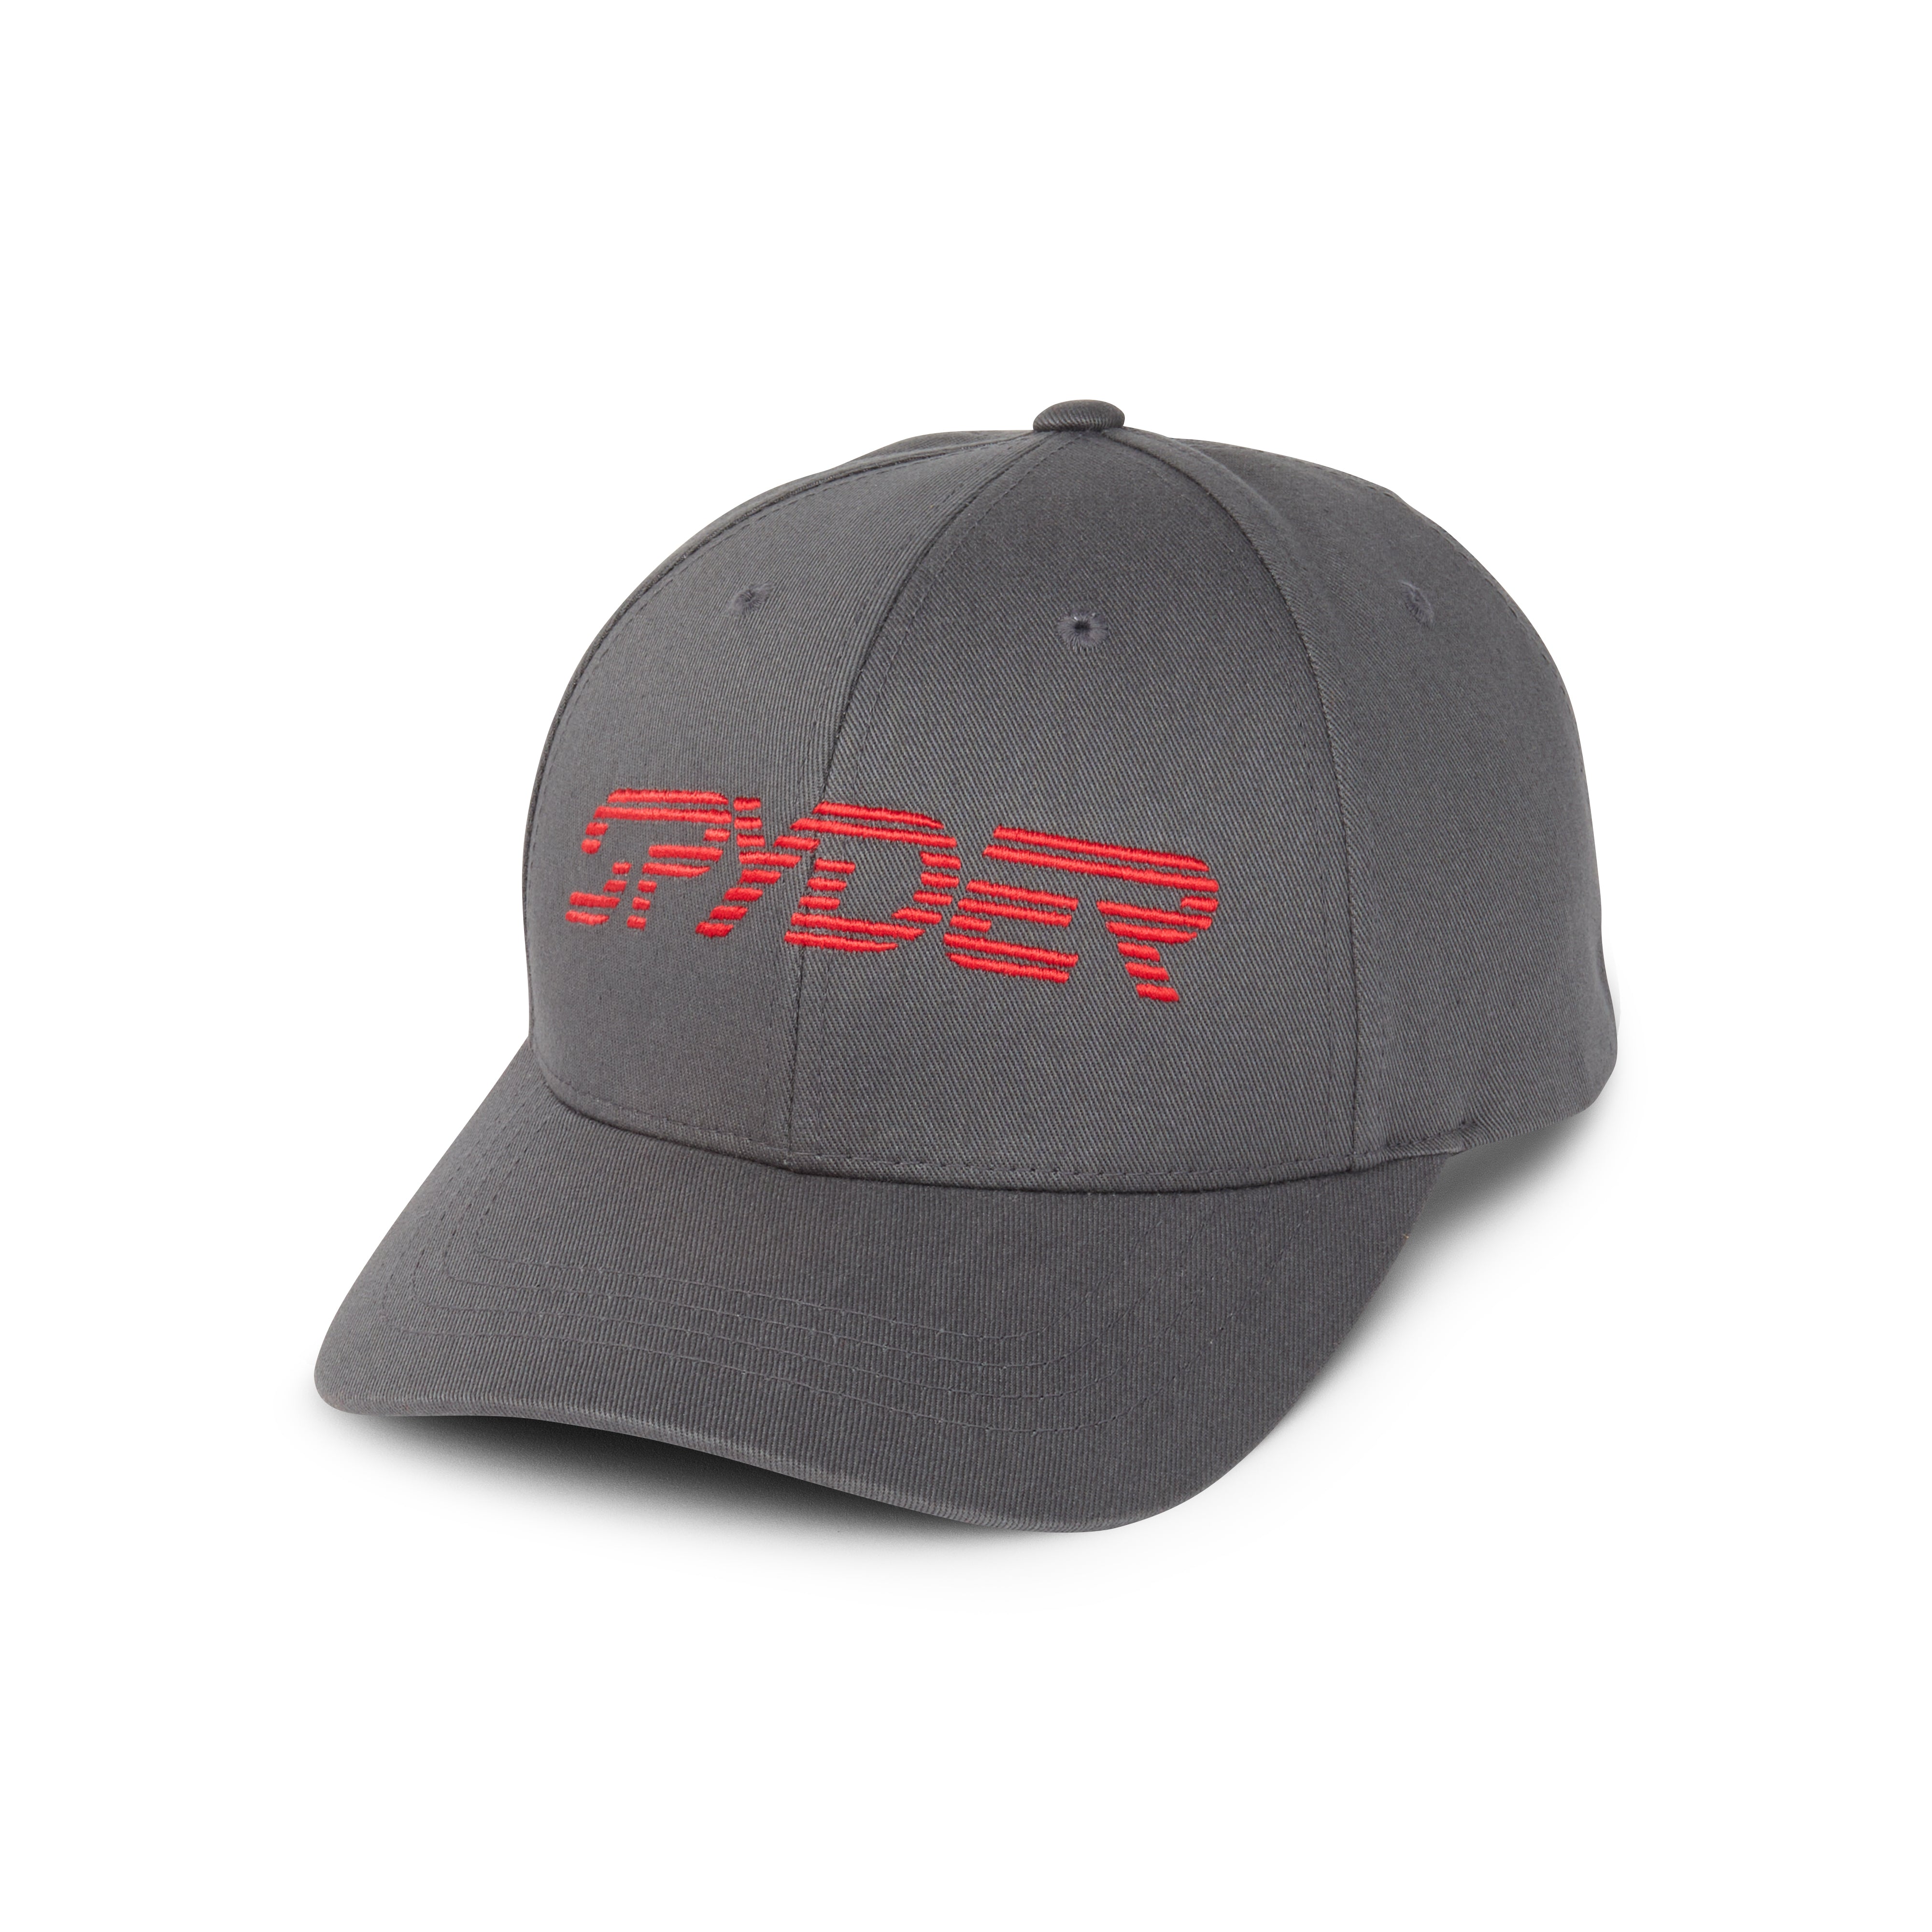 Spyder Range Cap Hat, Black, Mens, Size O/S